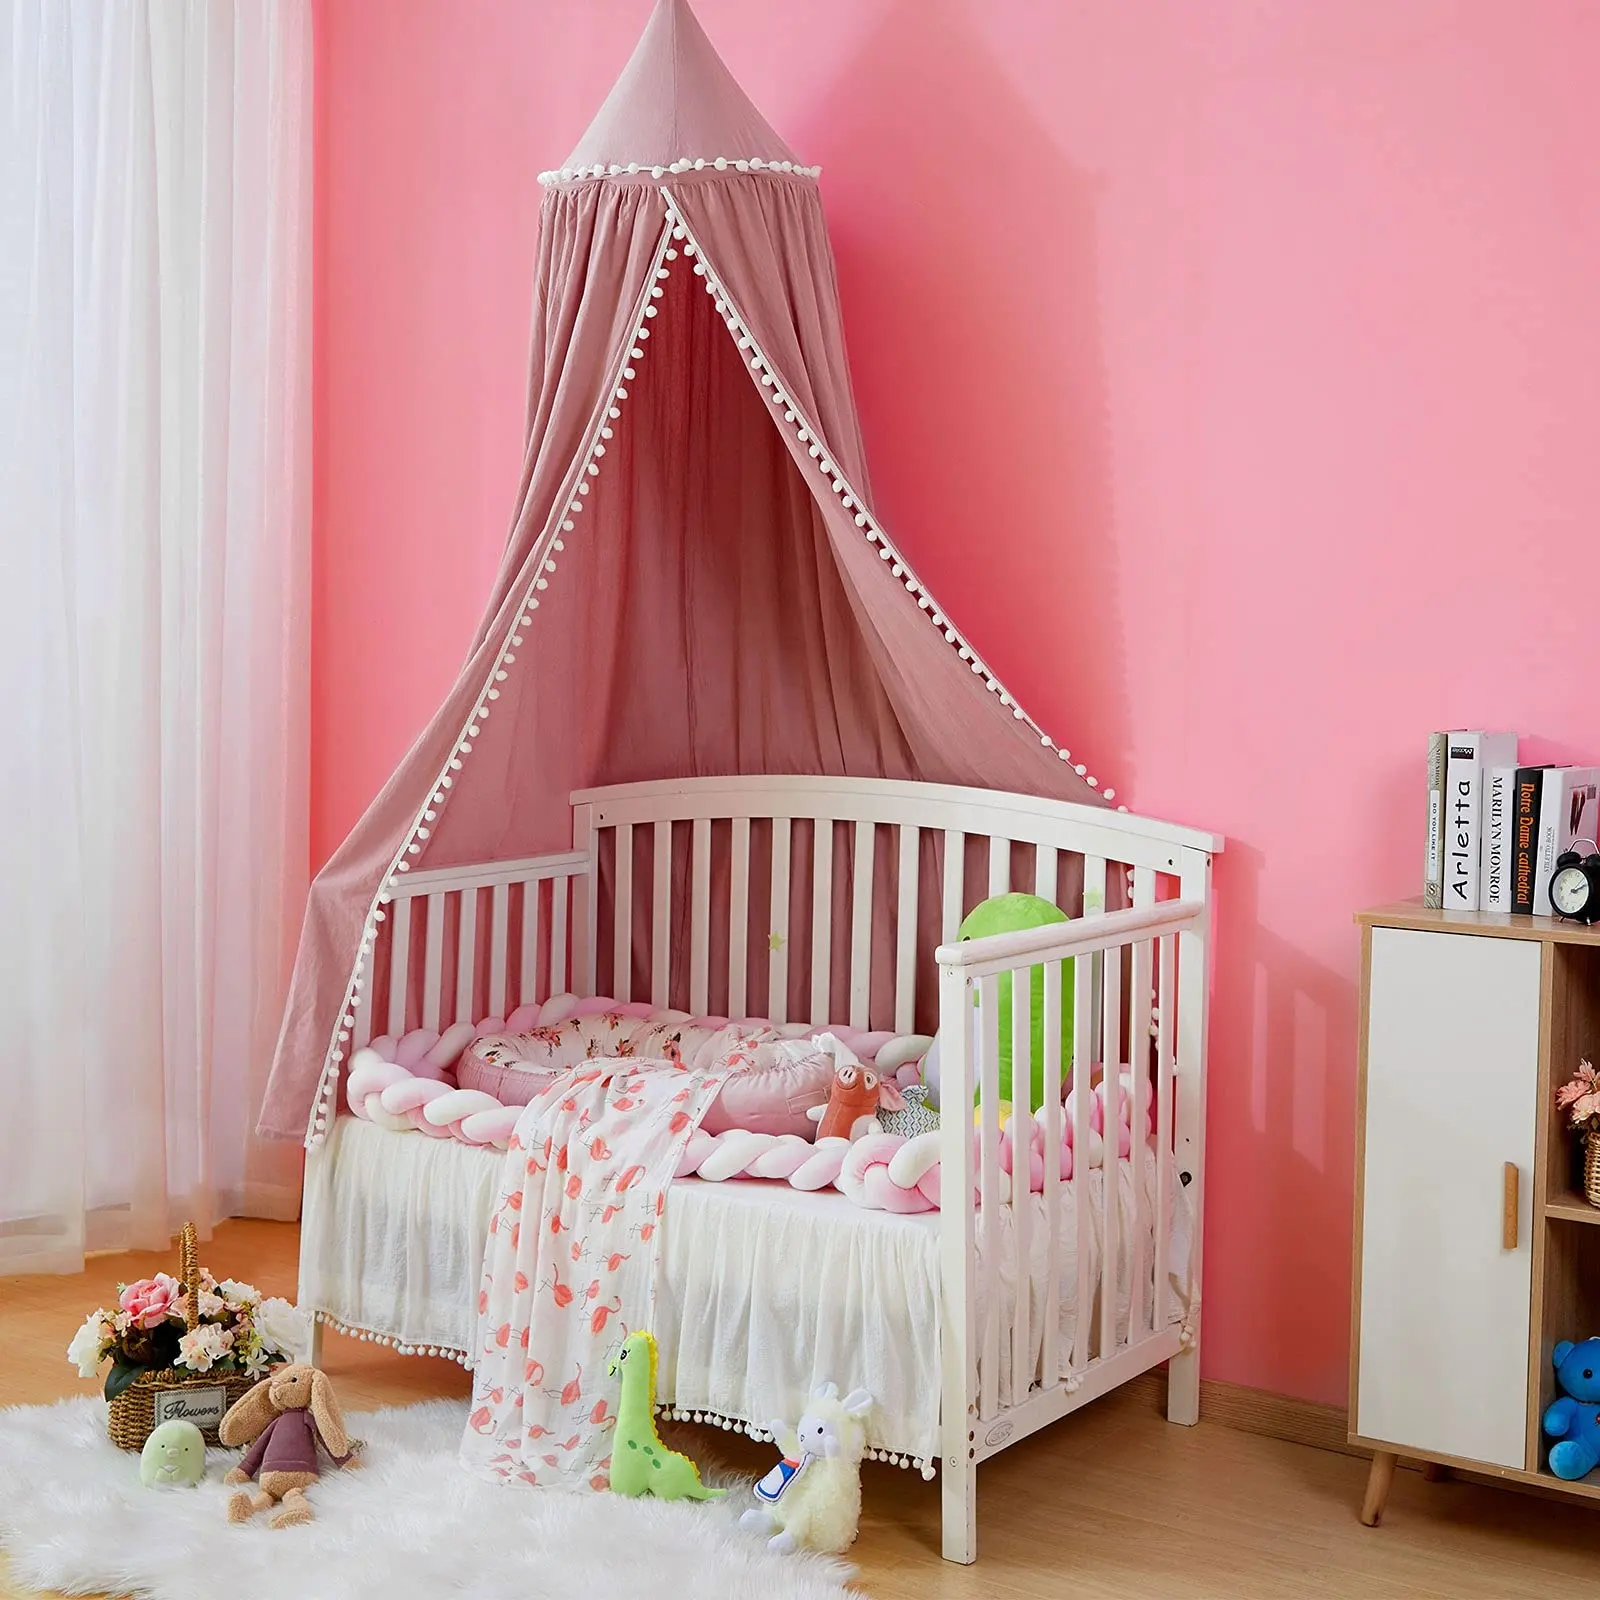 Benutzer definierte Baldachin Farben Runde Kuppel hängen Kinderzimmer Baby Kinder bett Baumwolle Bett Vorhang Baldachin